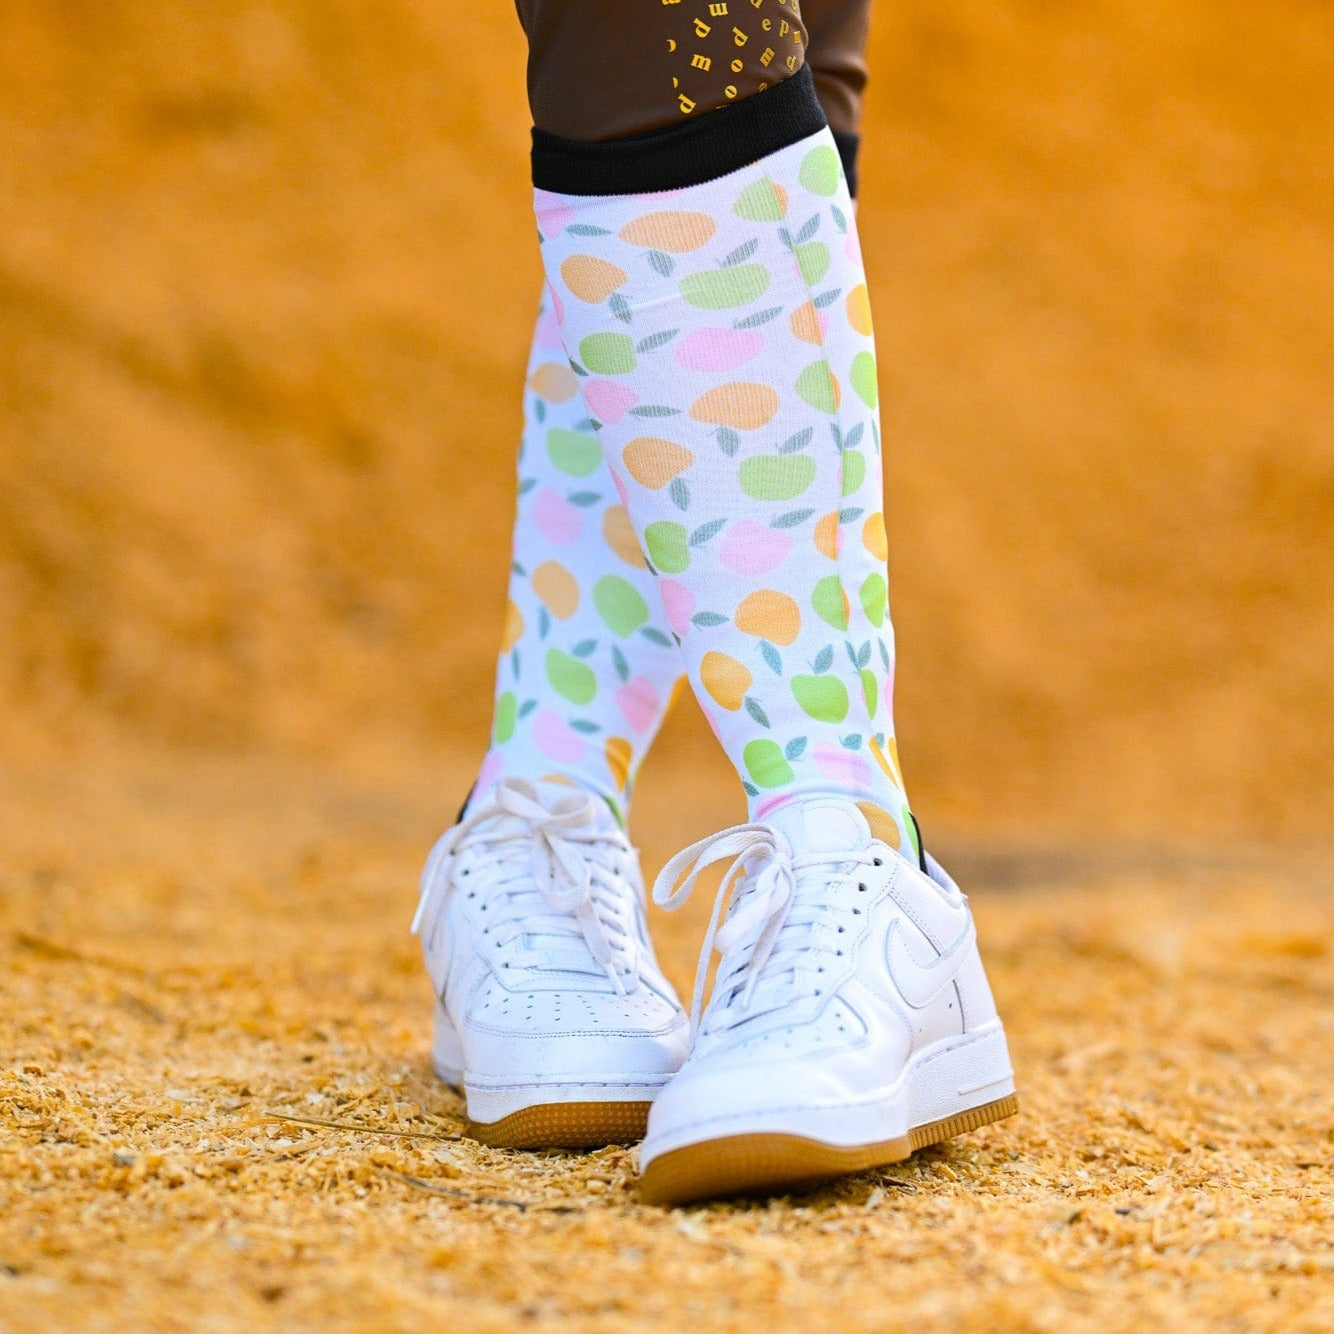 dreamers & schemers Limited Edition Limited Edition Apple Pie Socks equestrian boot socks boot socks thin socks riding socks pattern socks tall socks funny socks knee high socks horse socks horse show socks